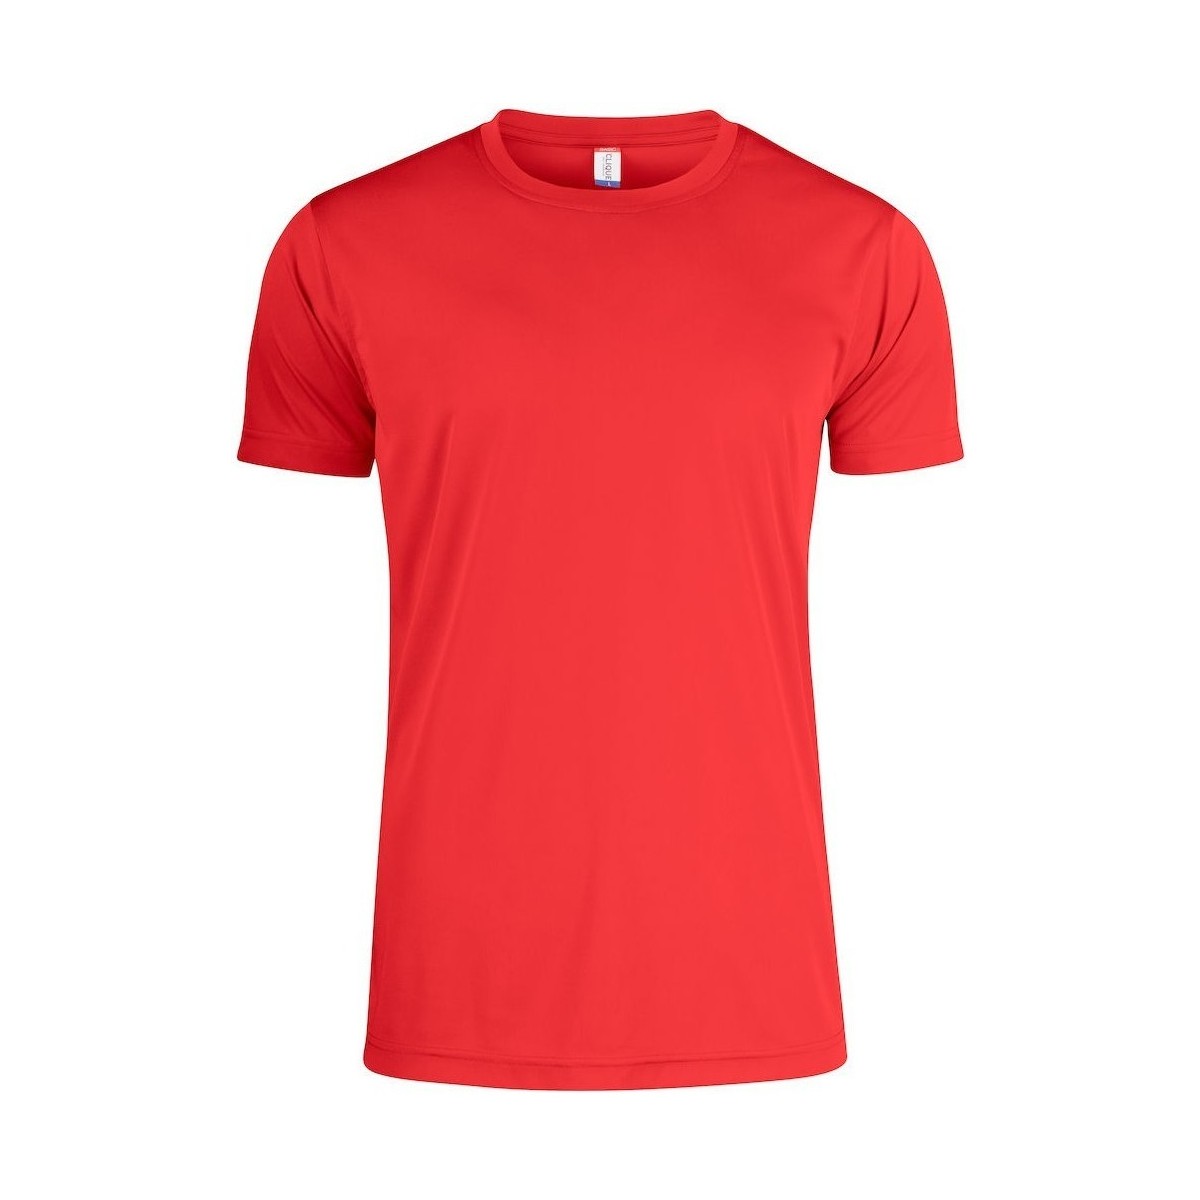 Vêtements Enfant T-shirts manches courtes C-Clique Basic Rouge